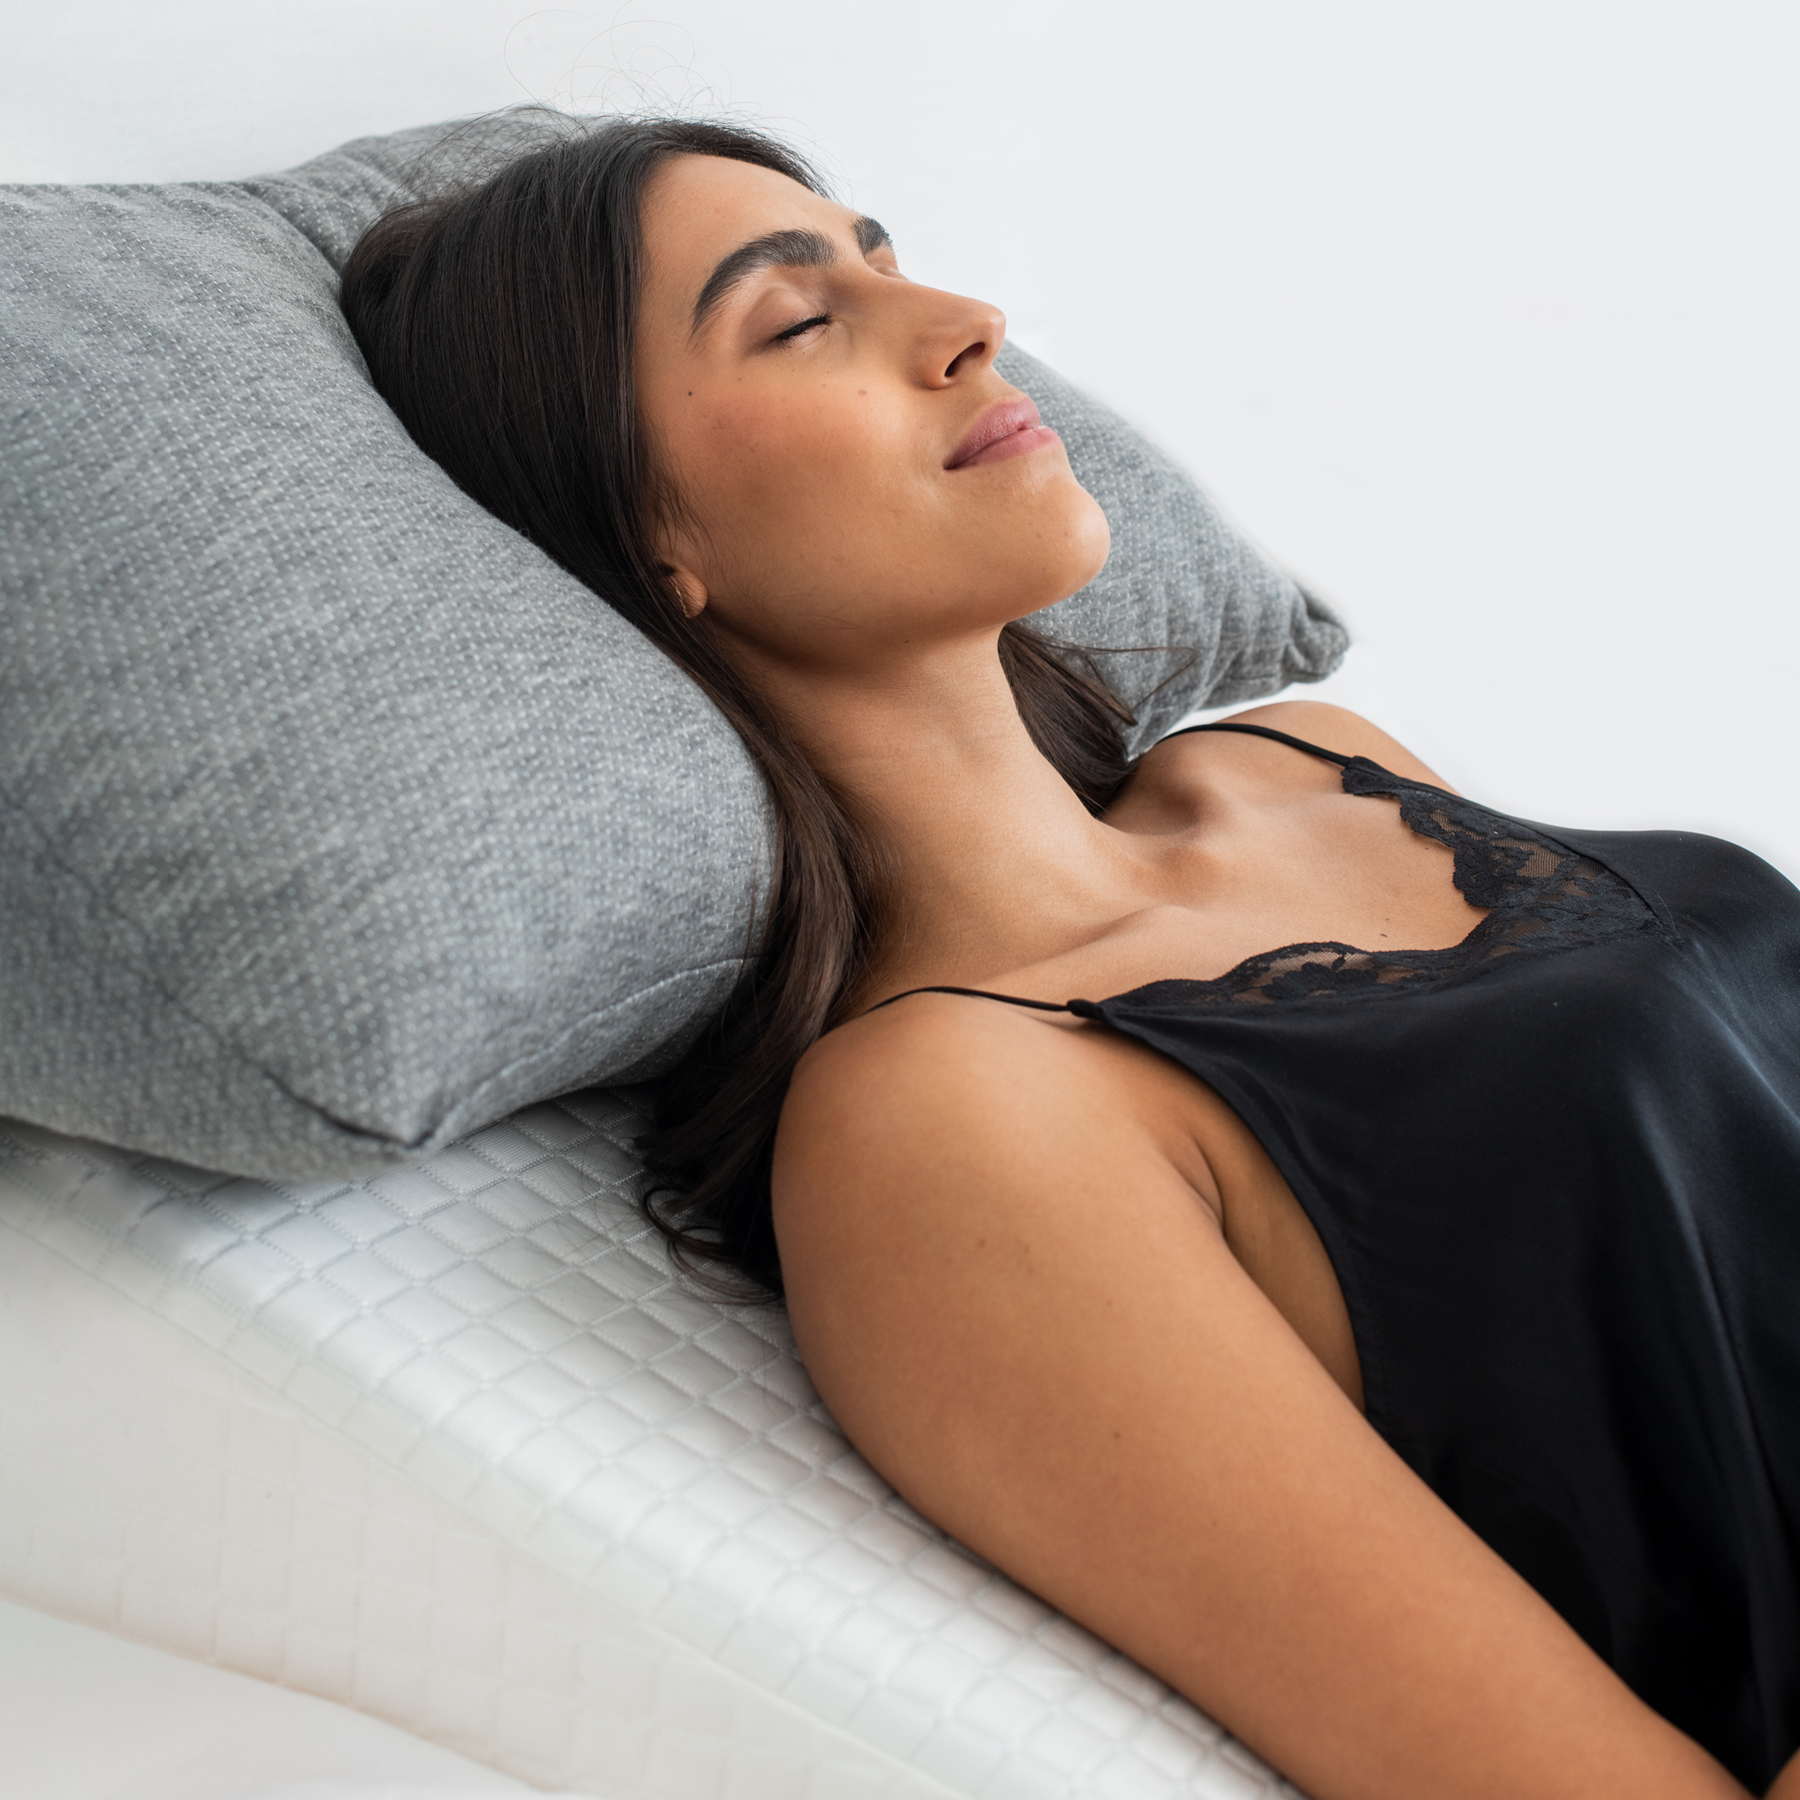 How An Adjustable Pillow Can Help You Sleep Better